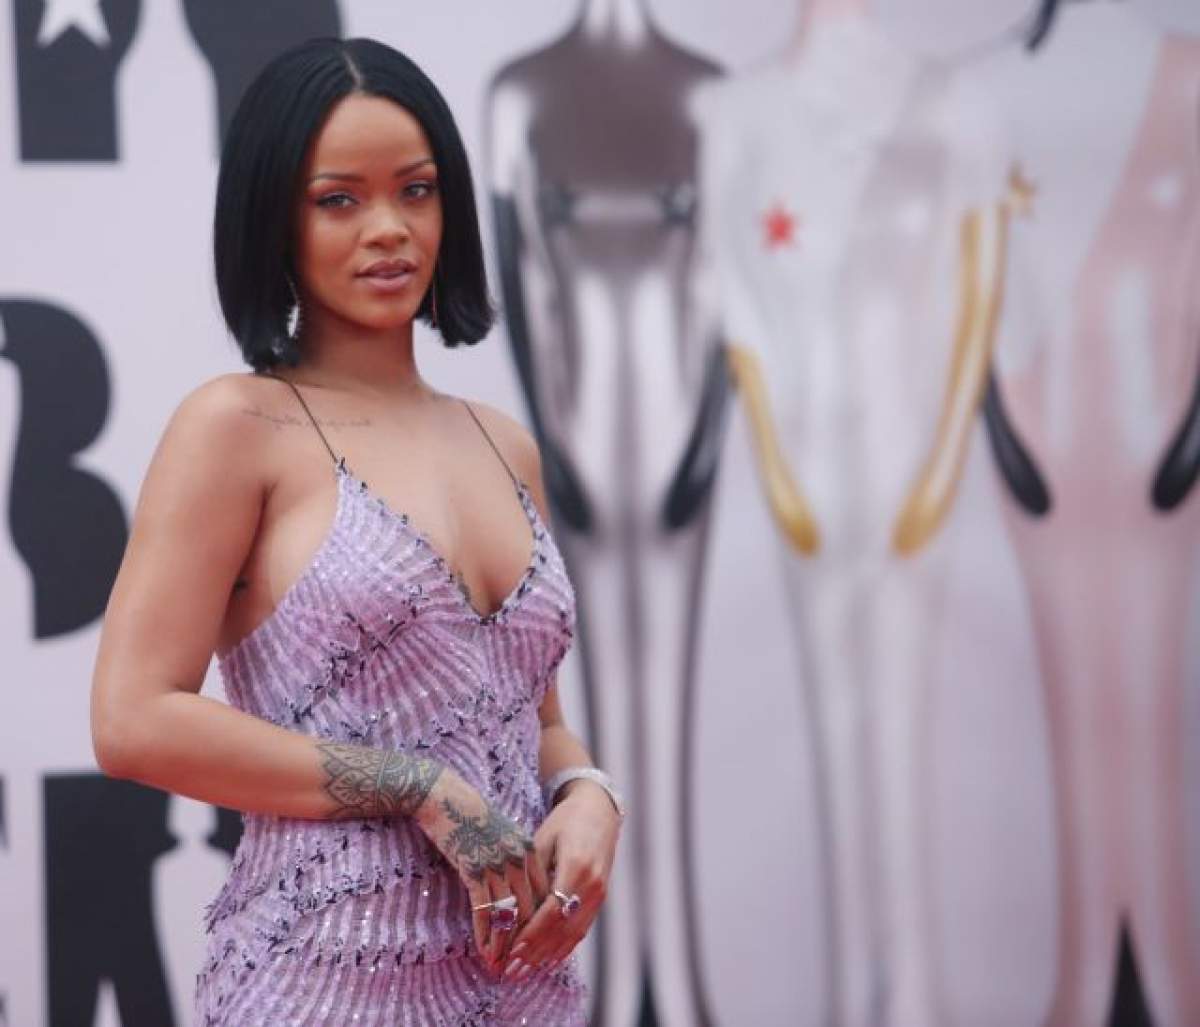 VIDEO / Rihanna, interzis de sexy în ultimul videoclip! Ce ascundea artista pe sfârcurile nărăvașe